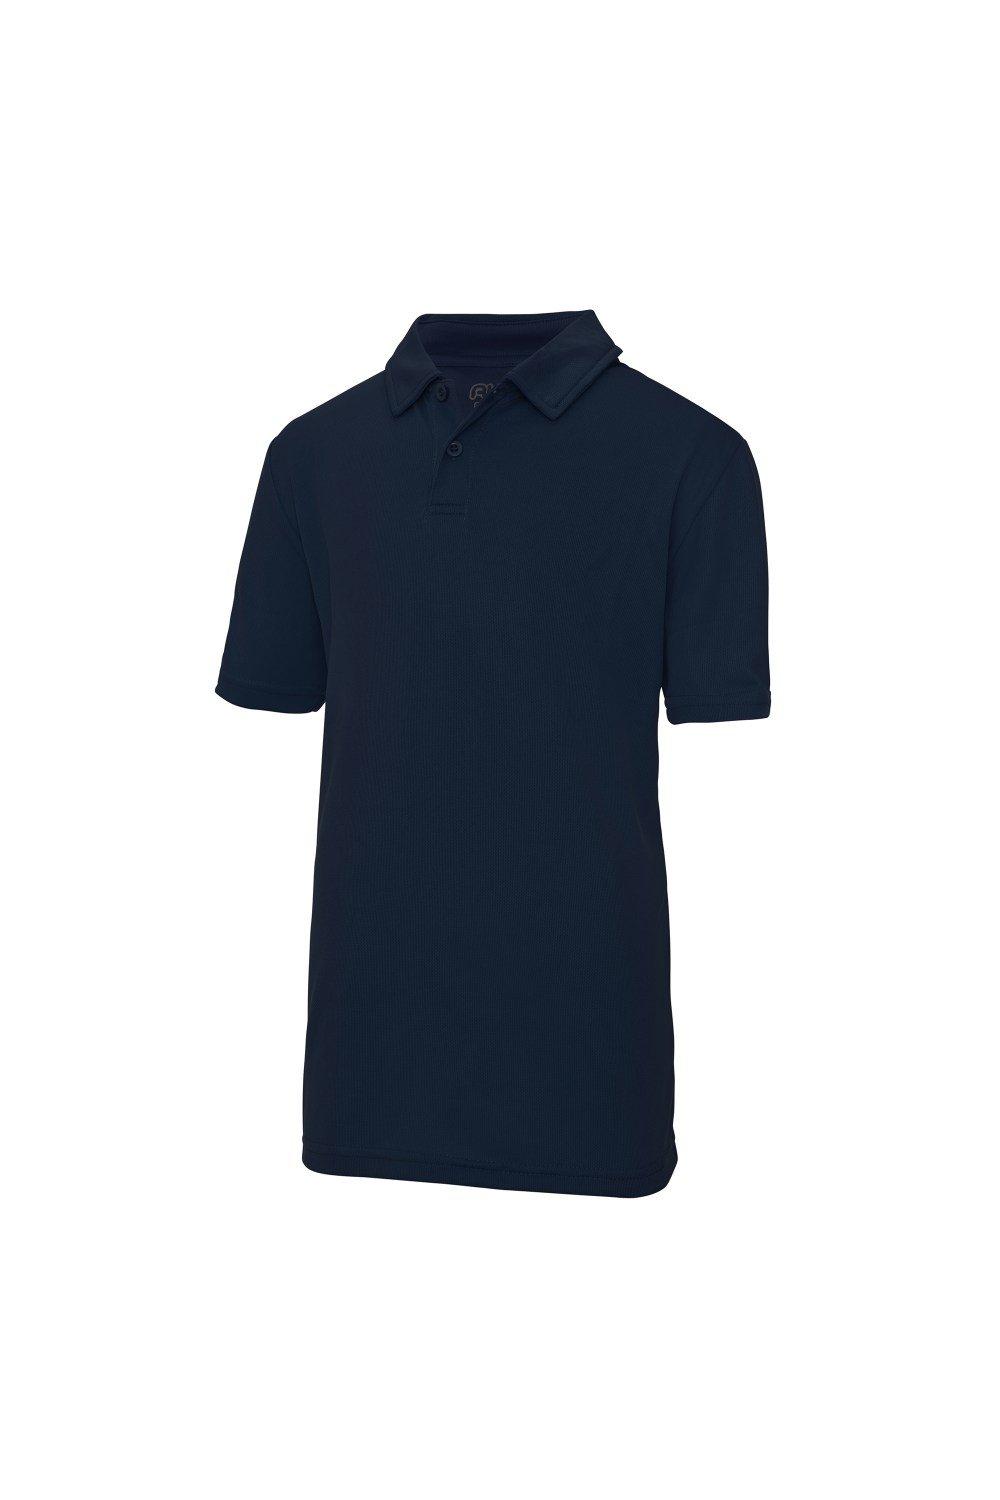 Спортивная однотонная рубашка-поло (2 шт.) Just Cool, темно-синий